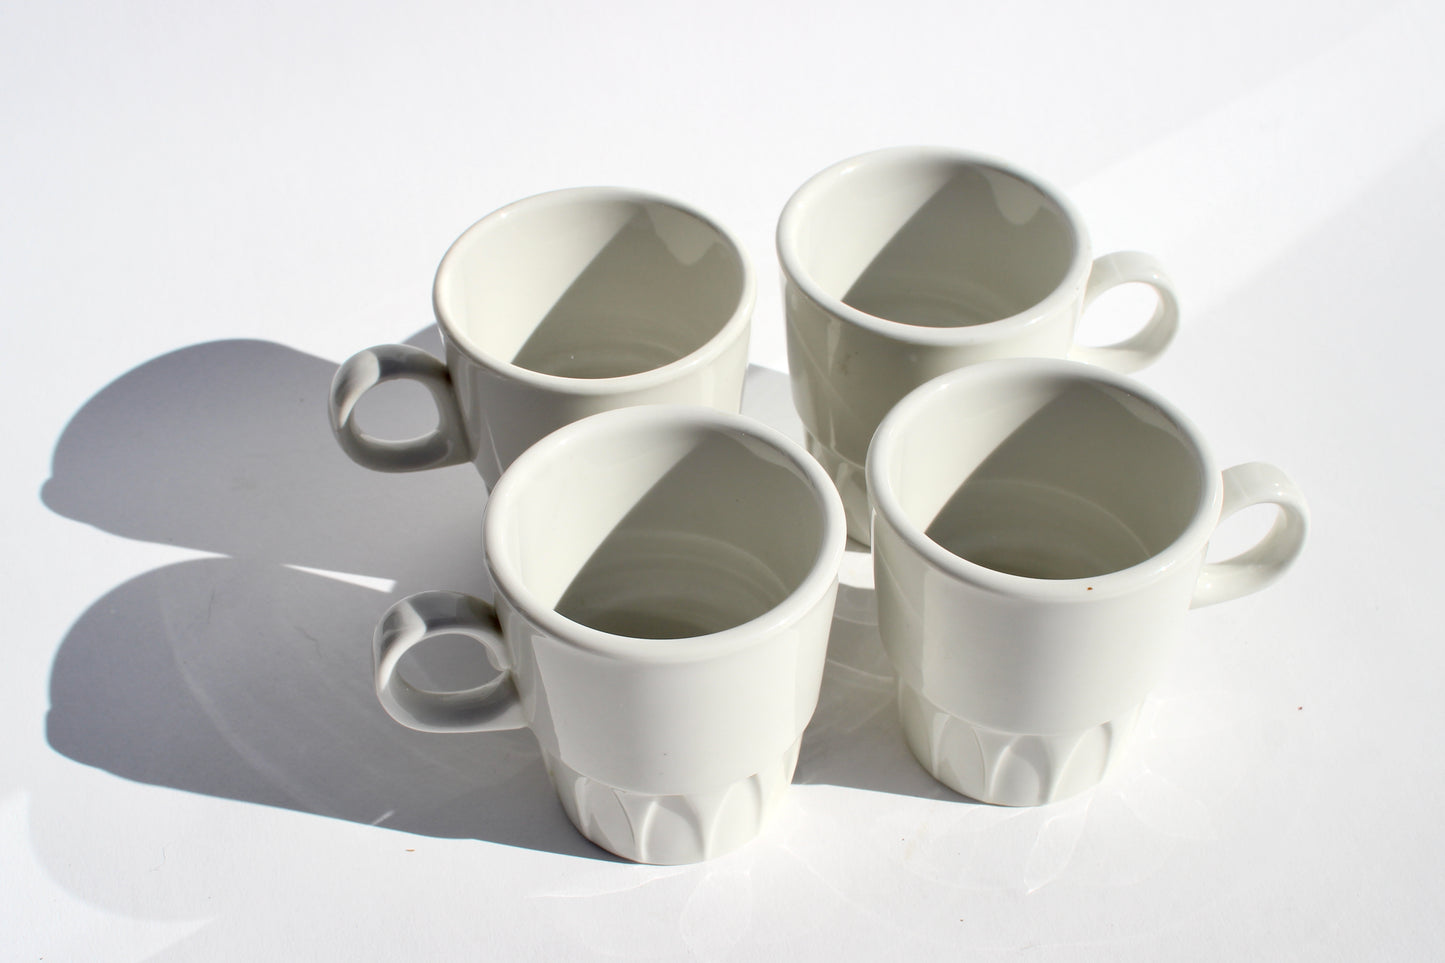 geo coffee cups (4)